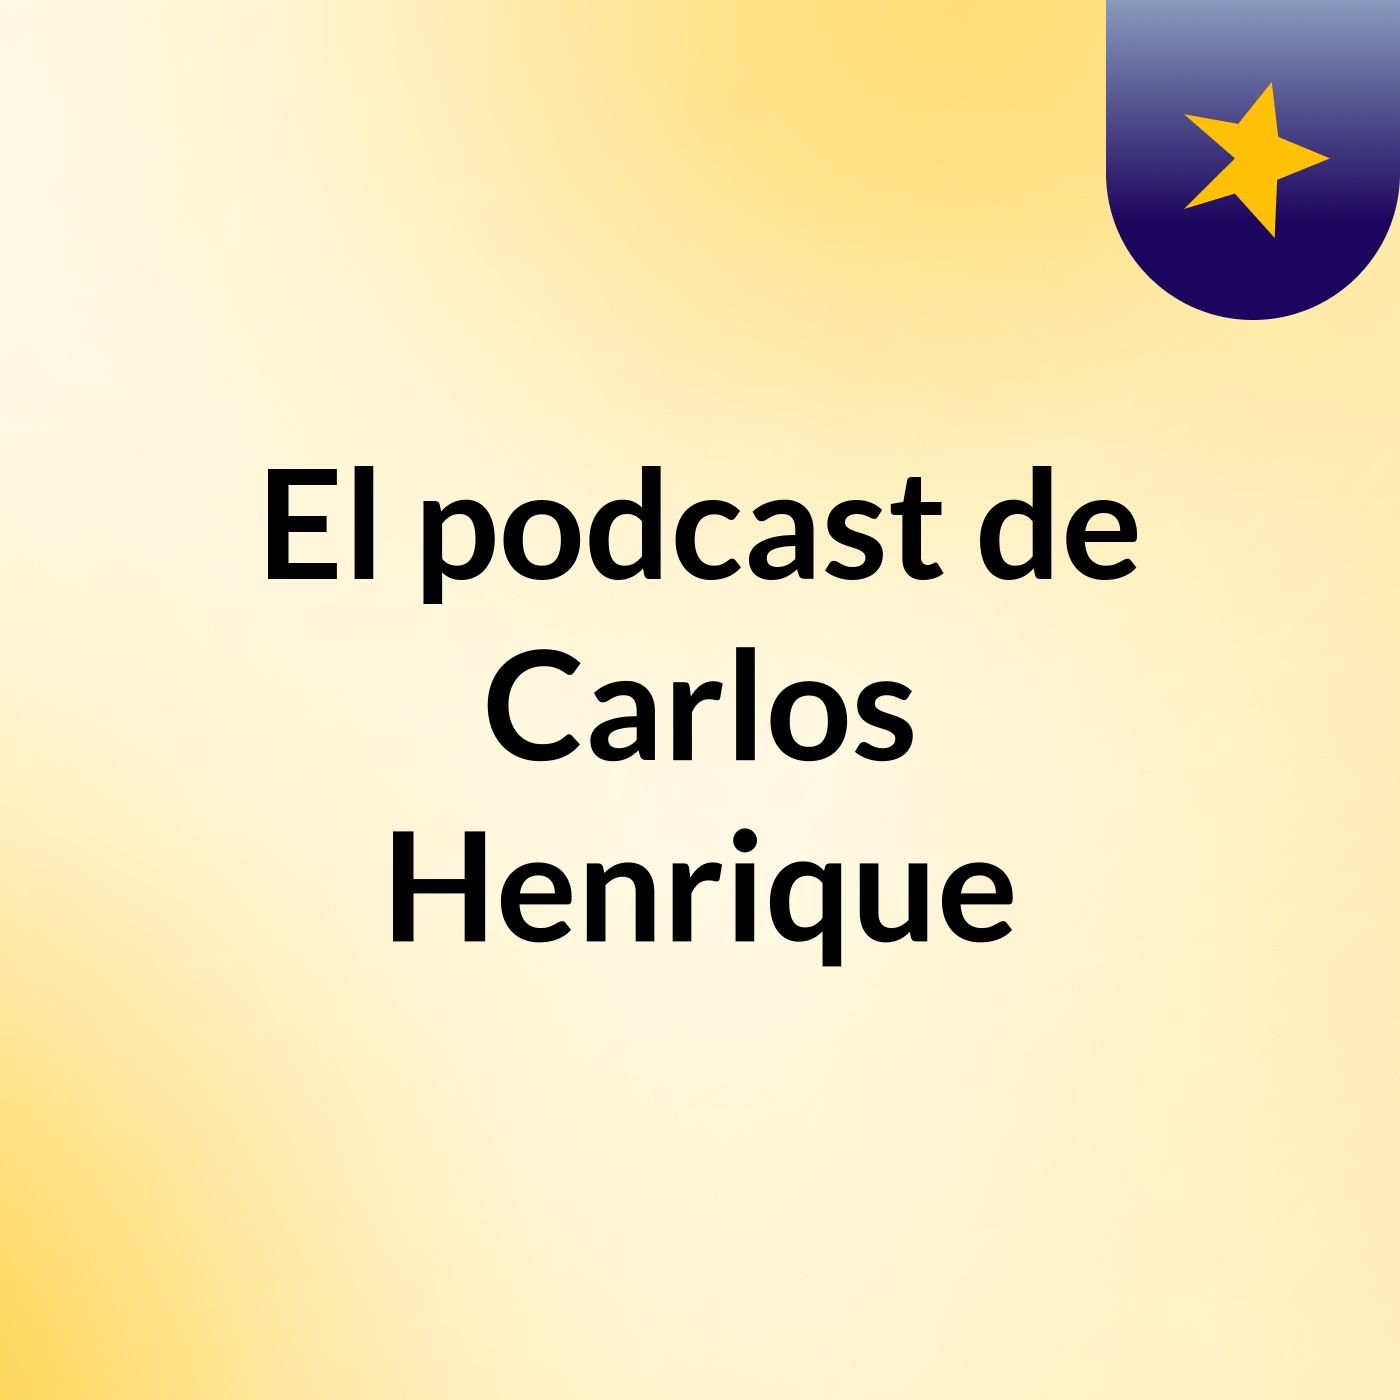 Episodio 5 - El podcast de Carlos Henrique